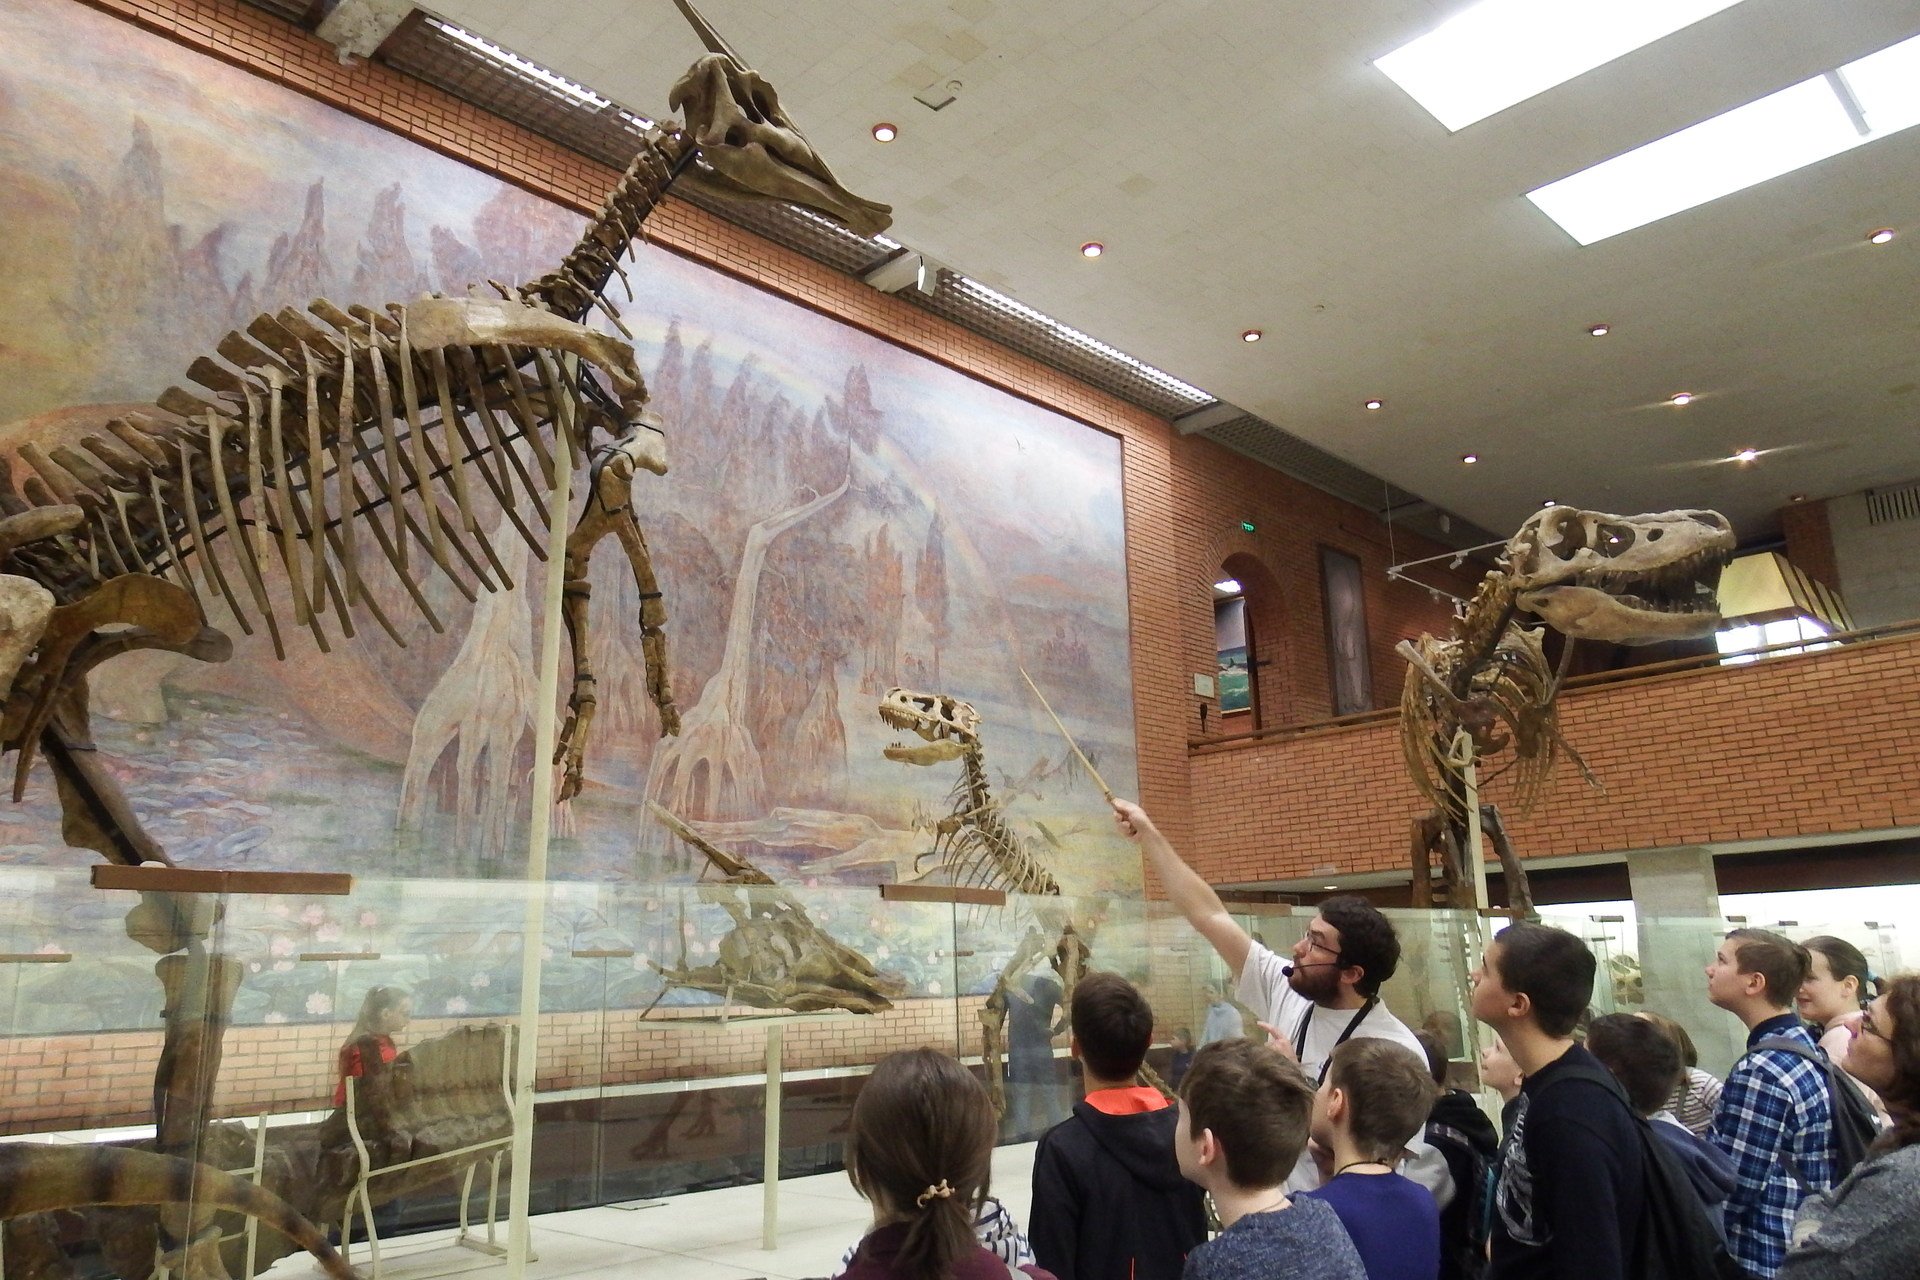 экспонаты палеонтологического музея в москве